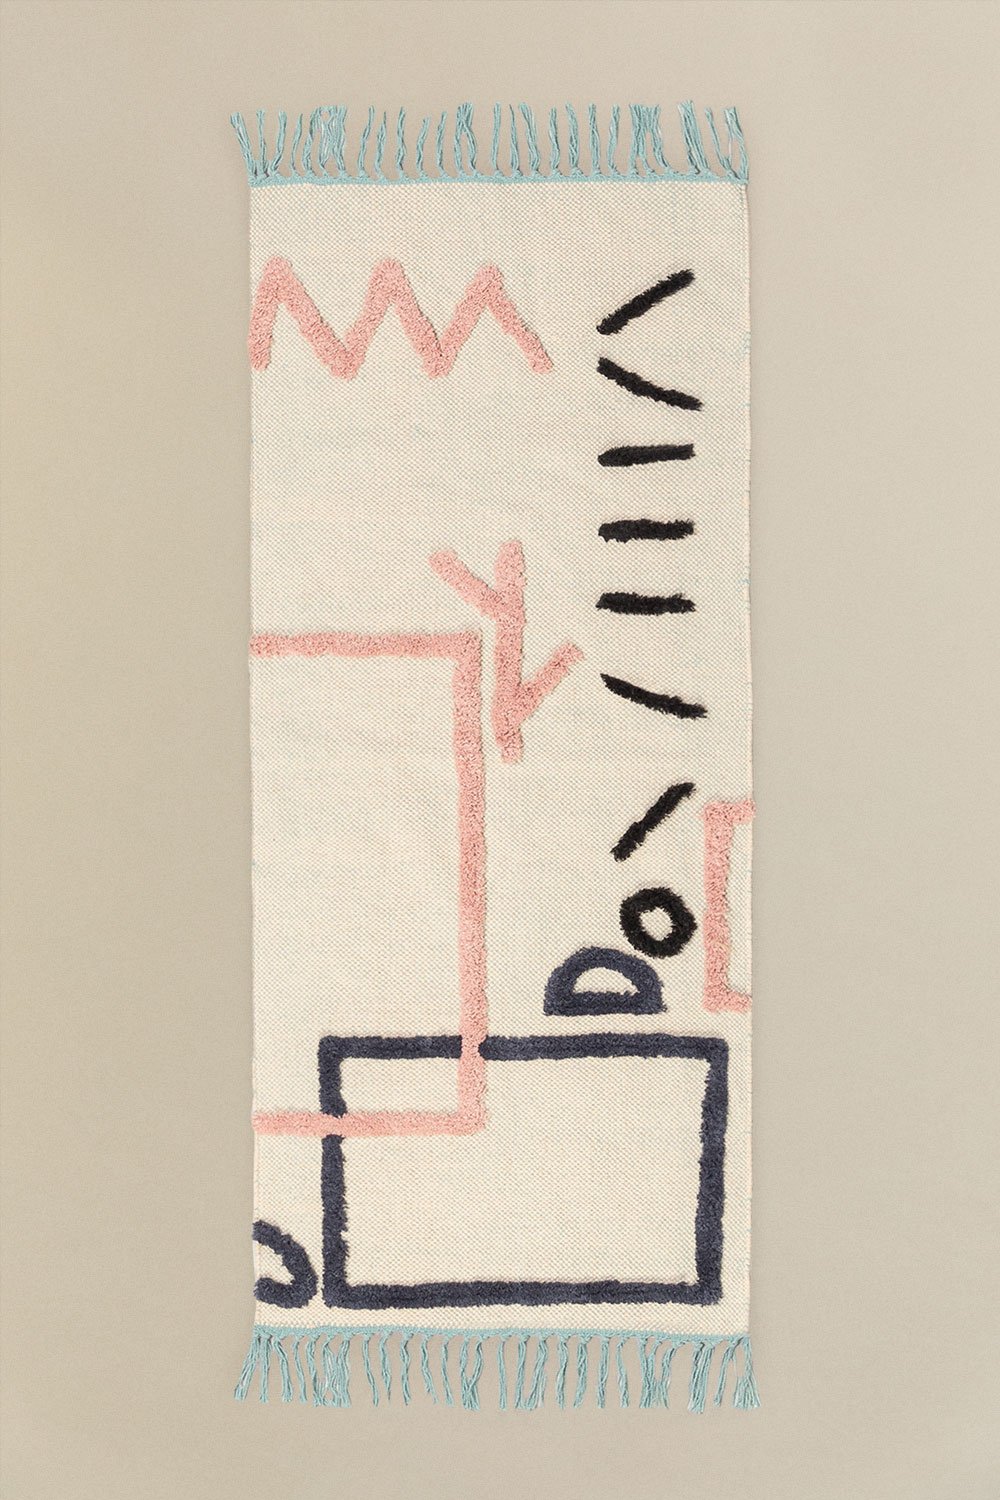 Katoenen vloerkleed (141x49 cm) Dudle, galerij beeld 1